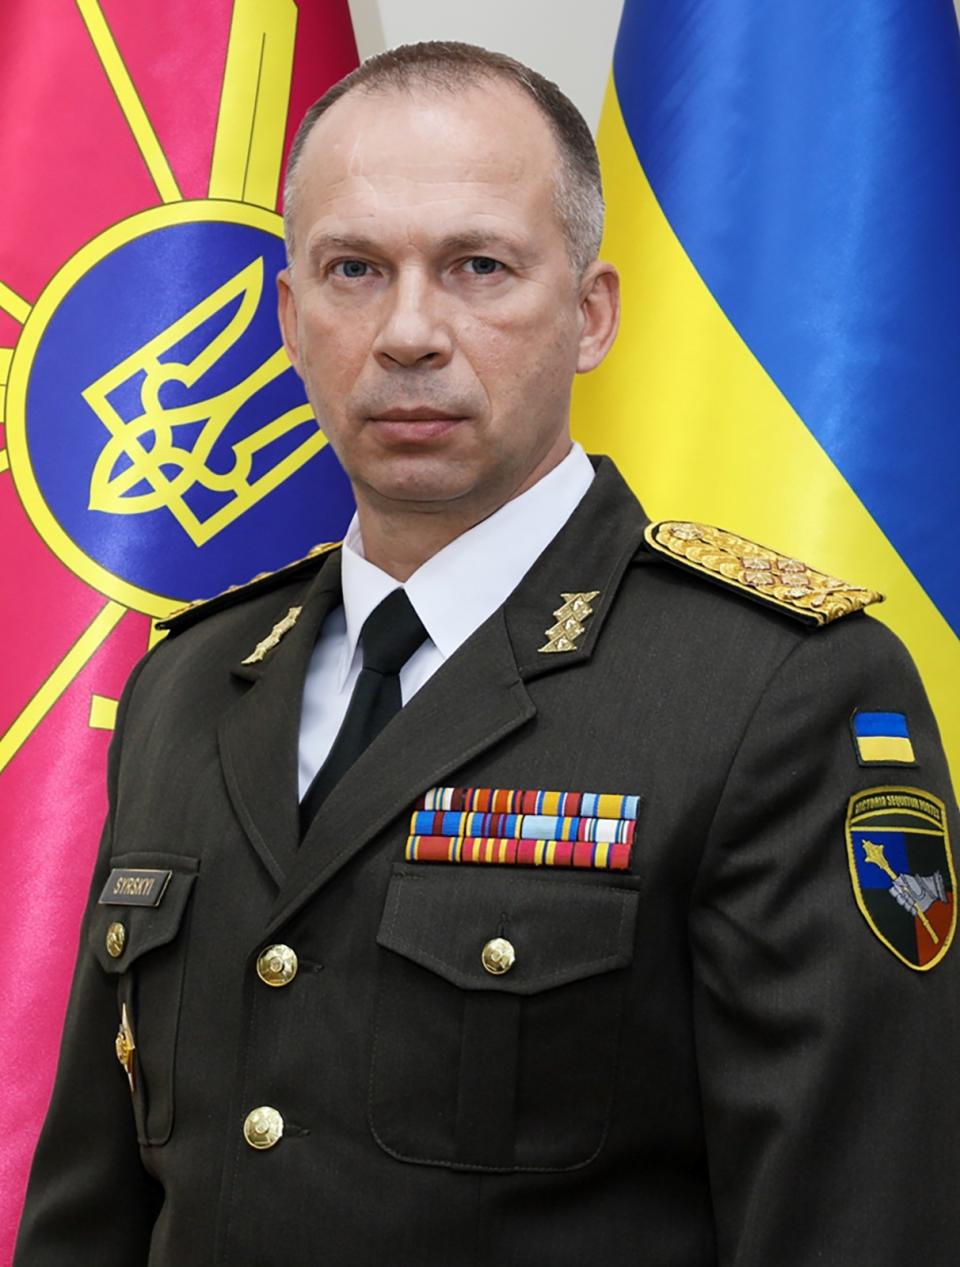 外號「雪豹」的陸軍司令瑟爾斯基將接任烏軍武裝部隊總司令。美聯社